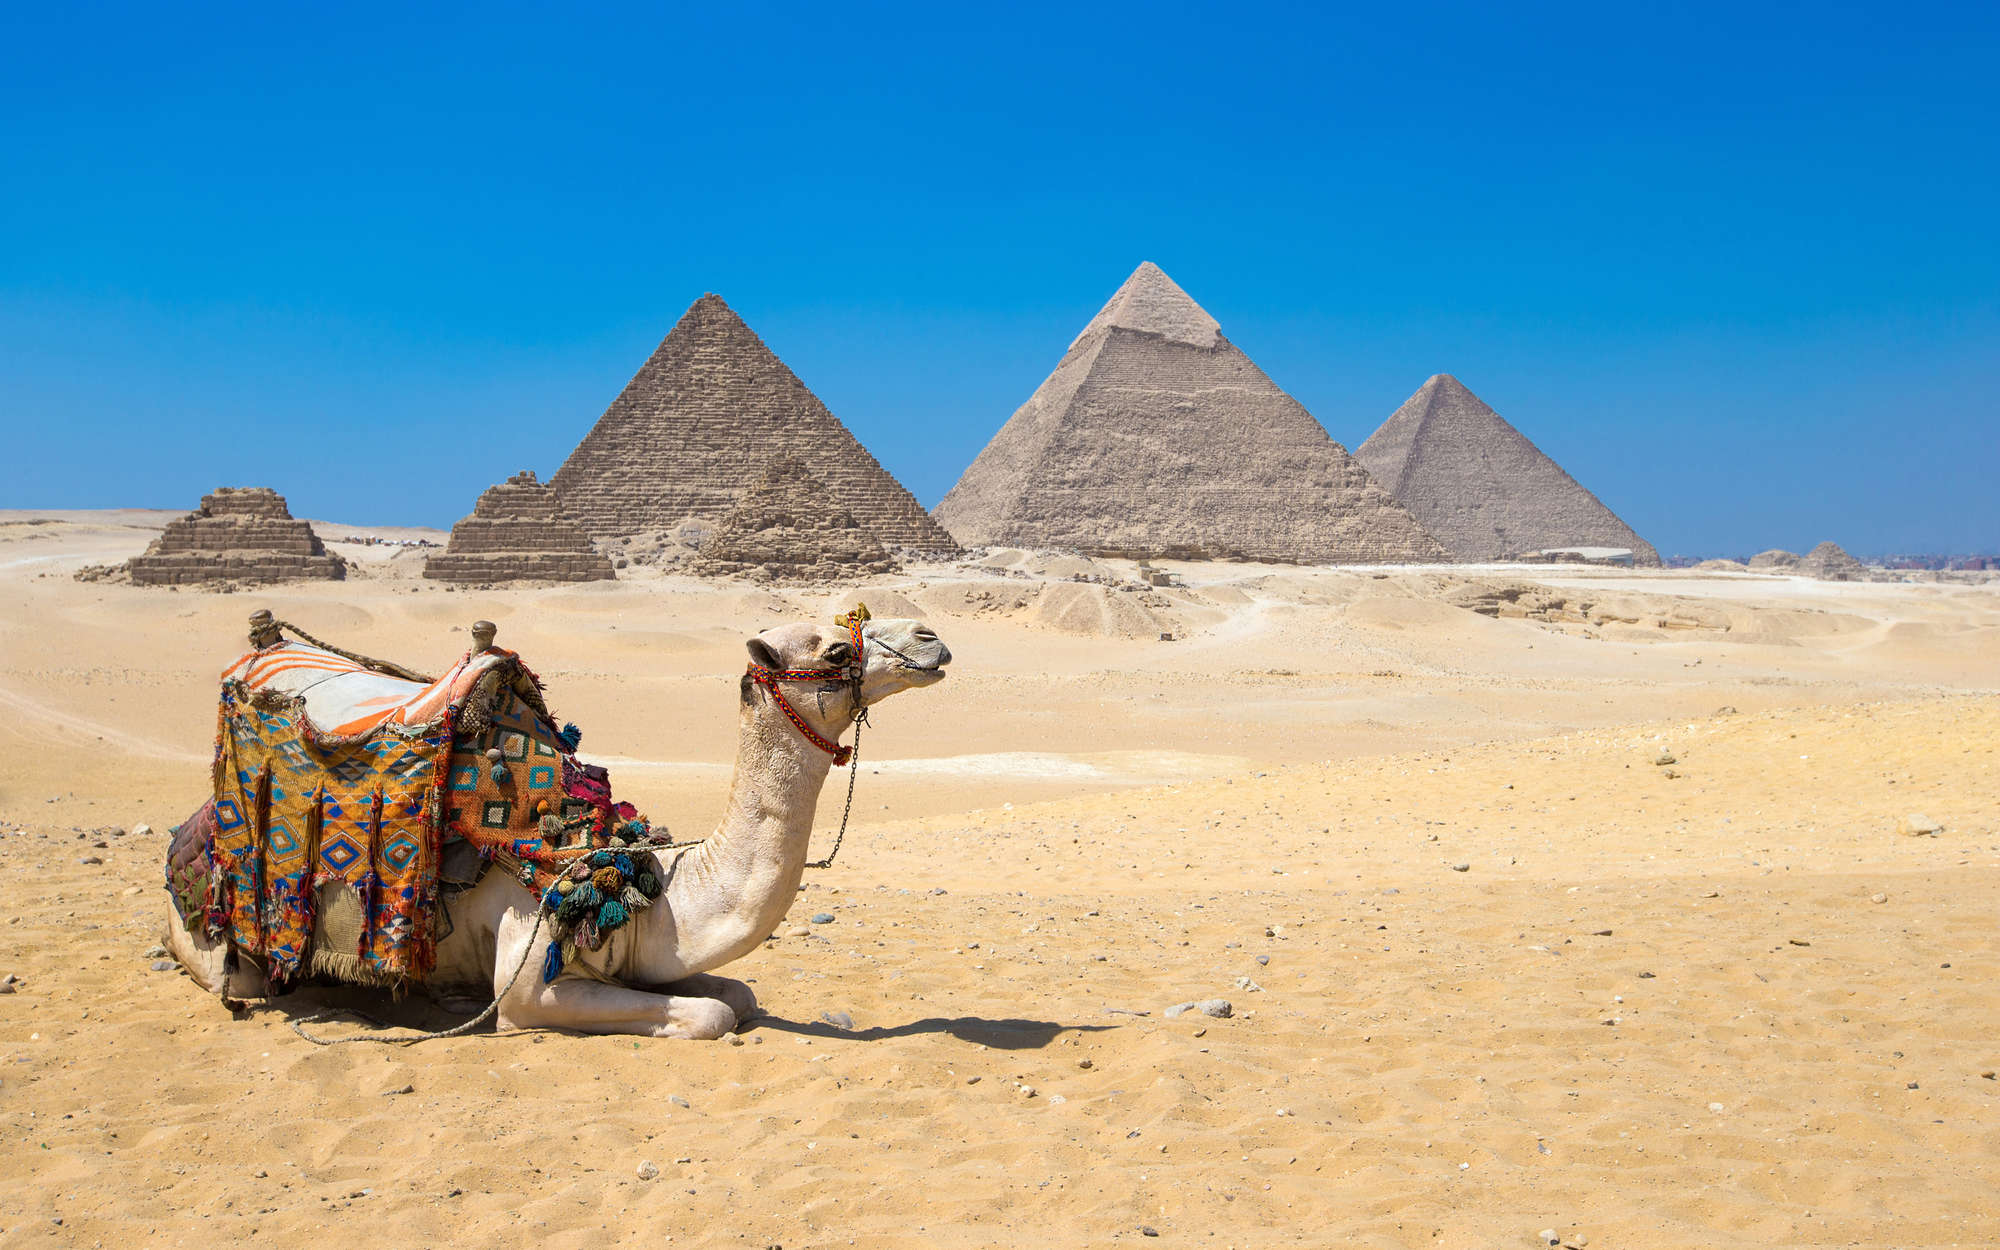             Piramidi di Giza con carta da parati Camel - Vello liscio opaco
        